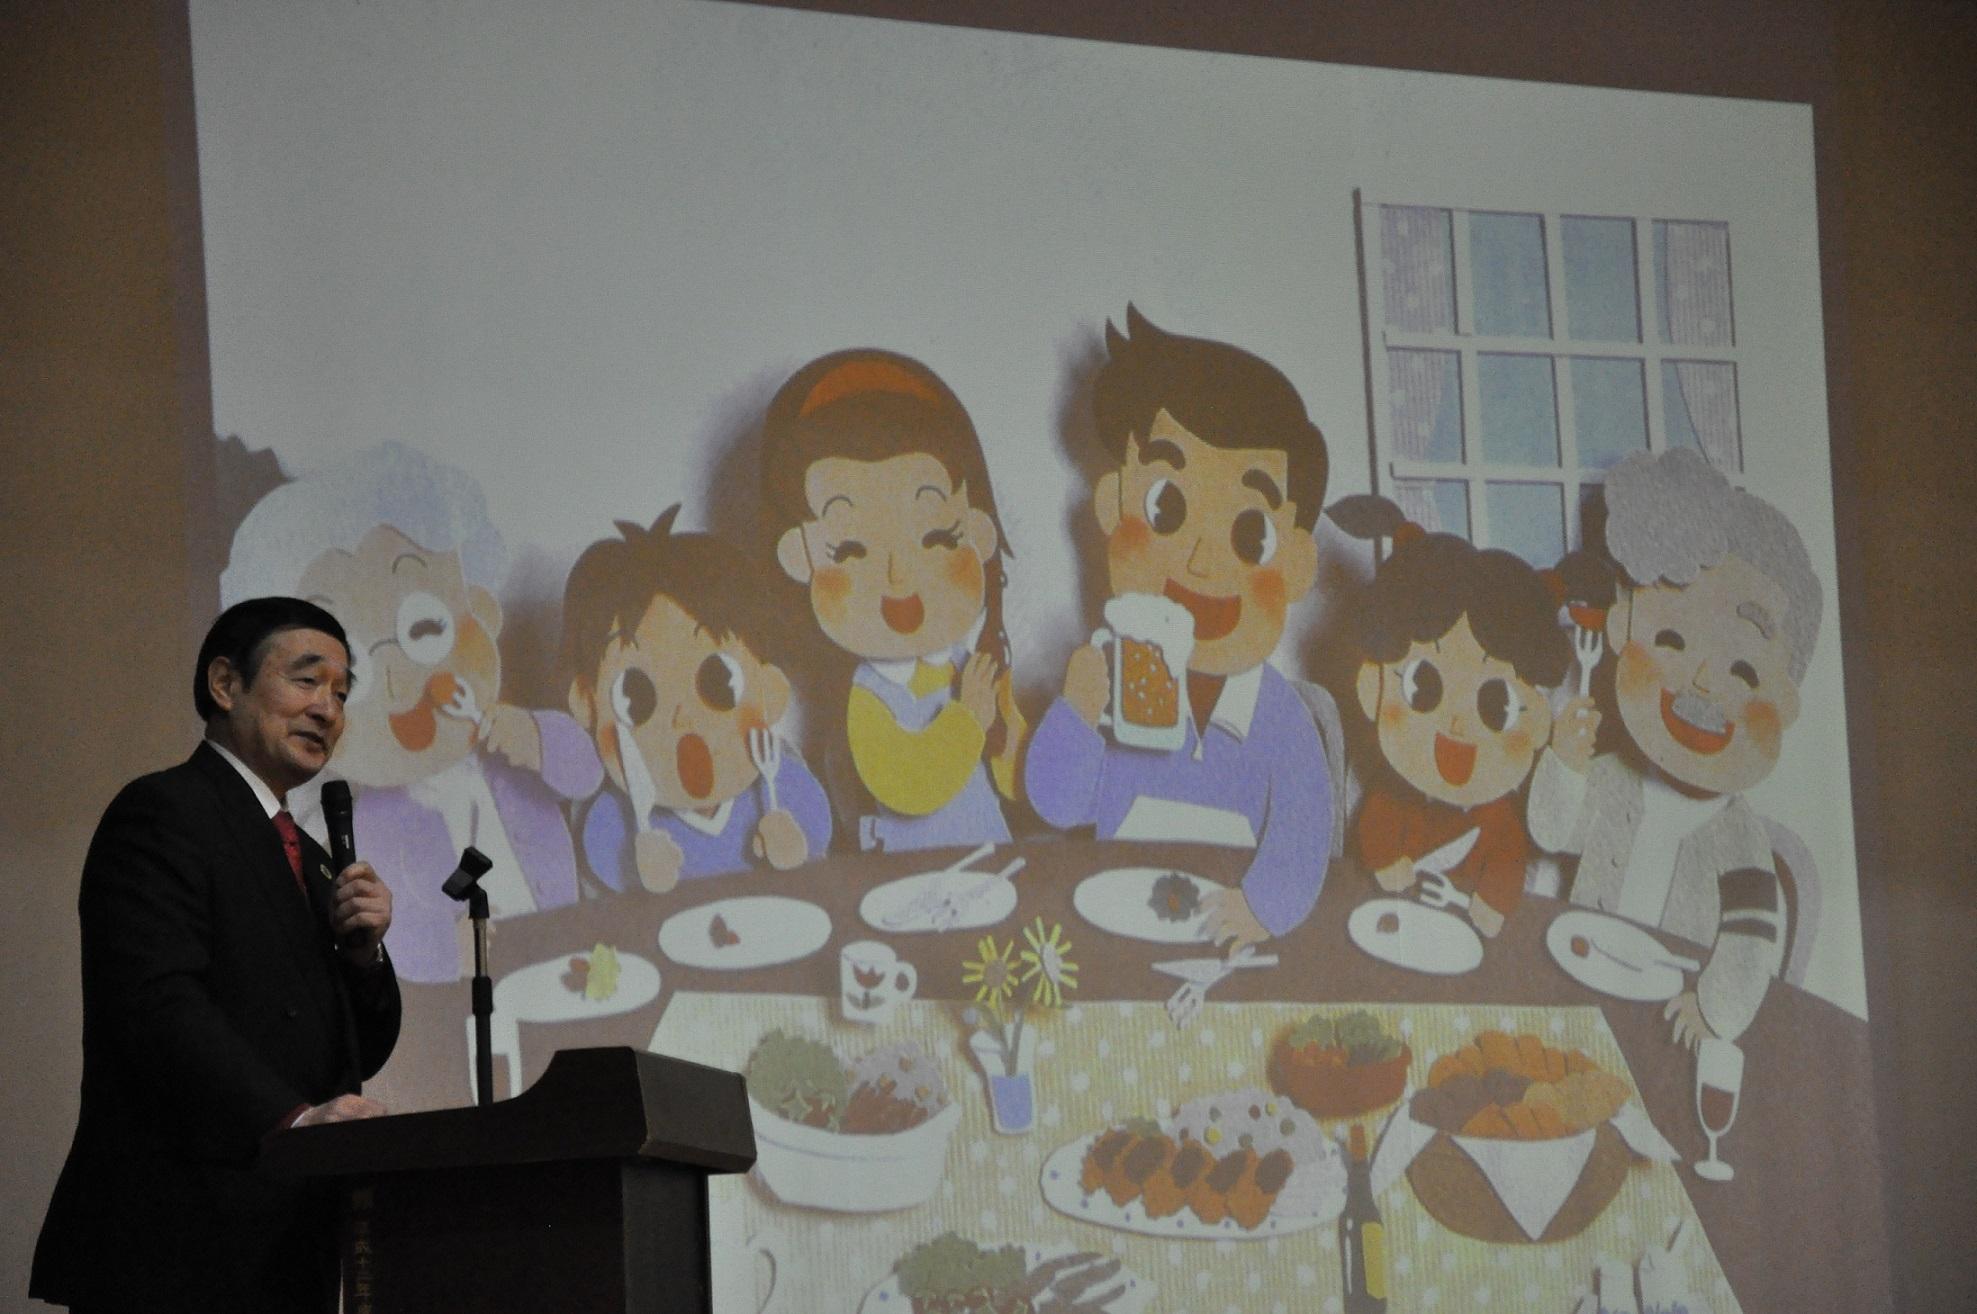 嘱託を囲む家族のイラストの写っているスクリーンの横で、マイクを持って話をしている野田先生の写真